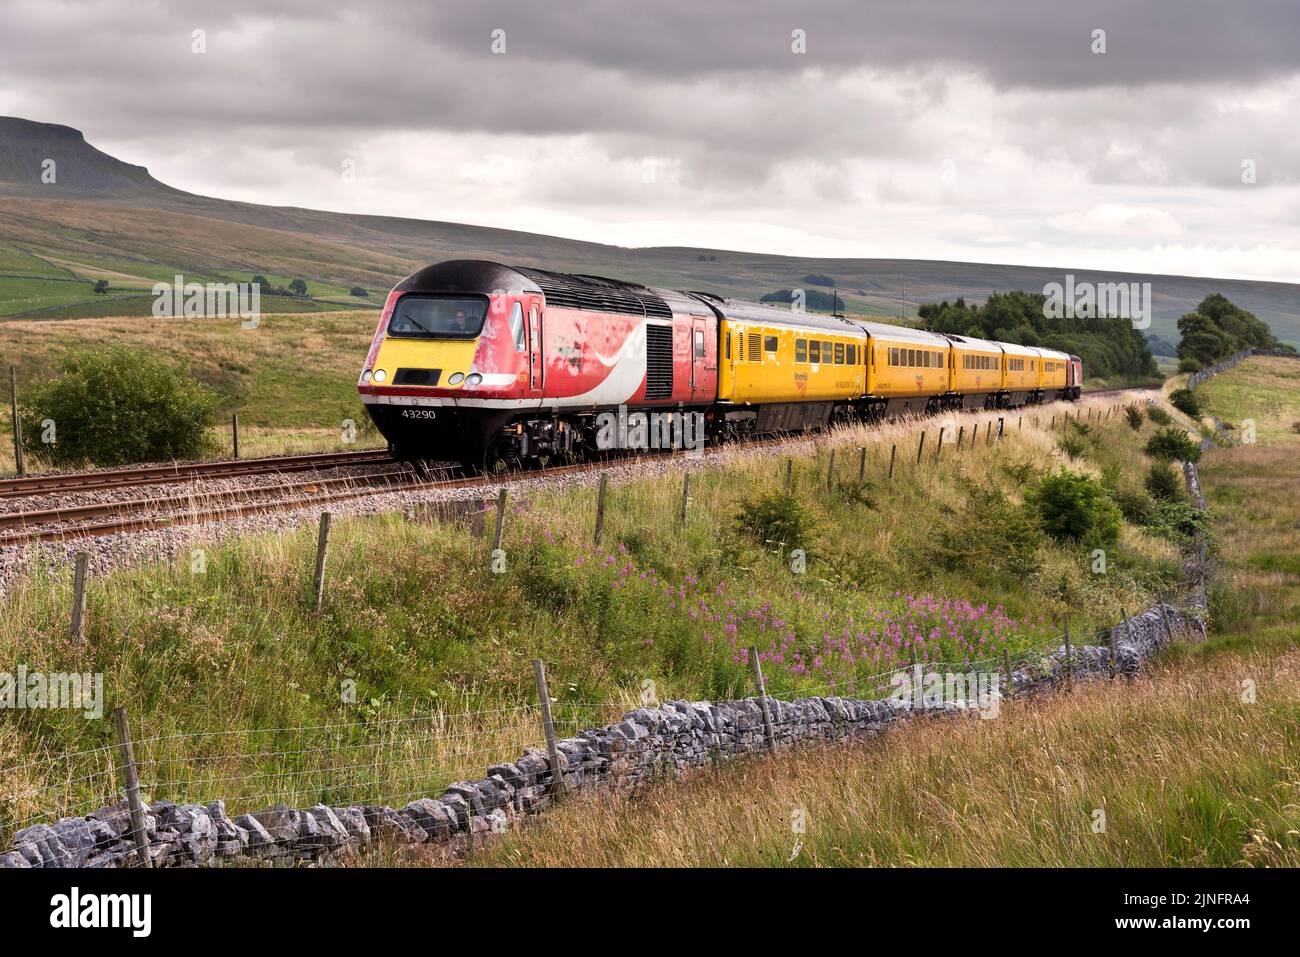 El Nuevo Tren de Medición (también conocido como 'The Flying Banana'). El tren pintado de amarillo evalúa el estado de las vías del ferrocarril. Visto aquí en Ribblesdale. Foto de stock